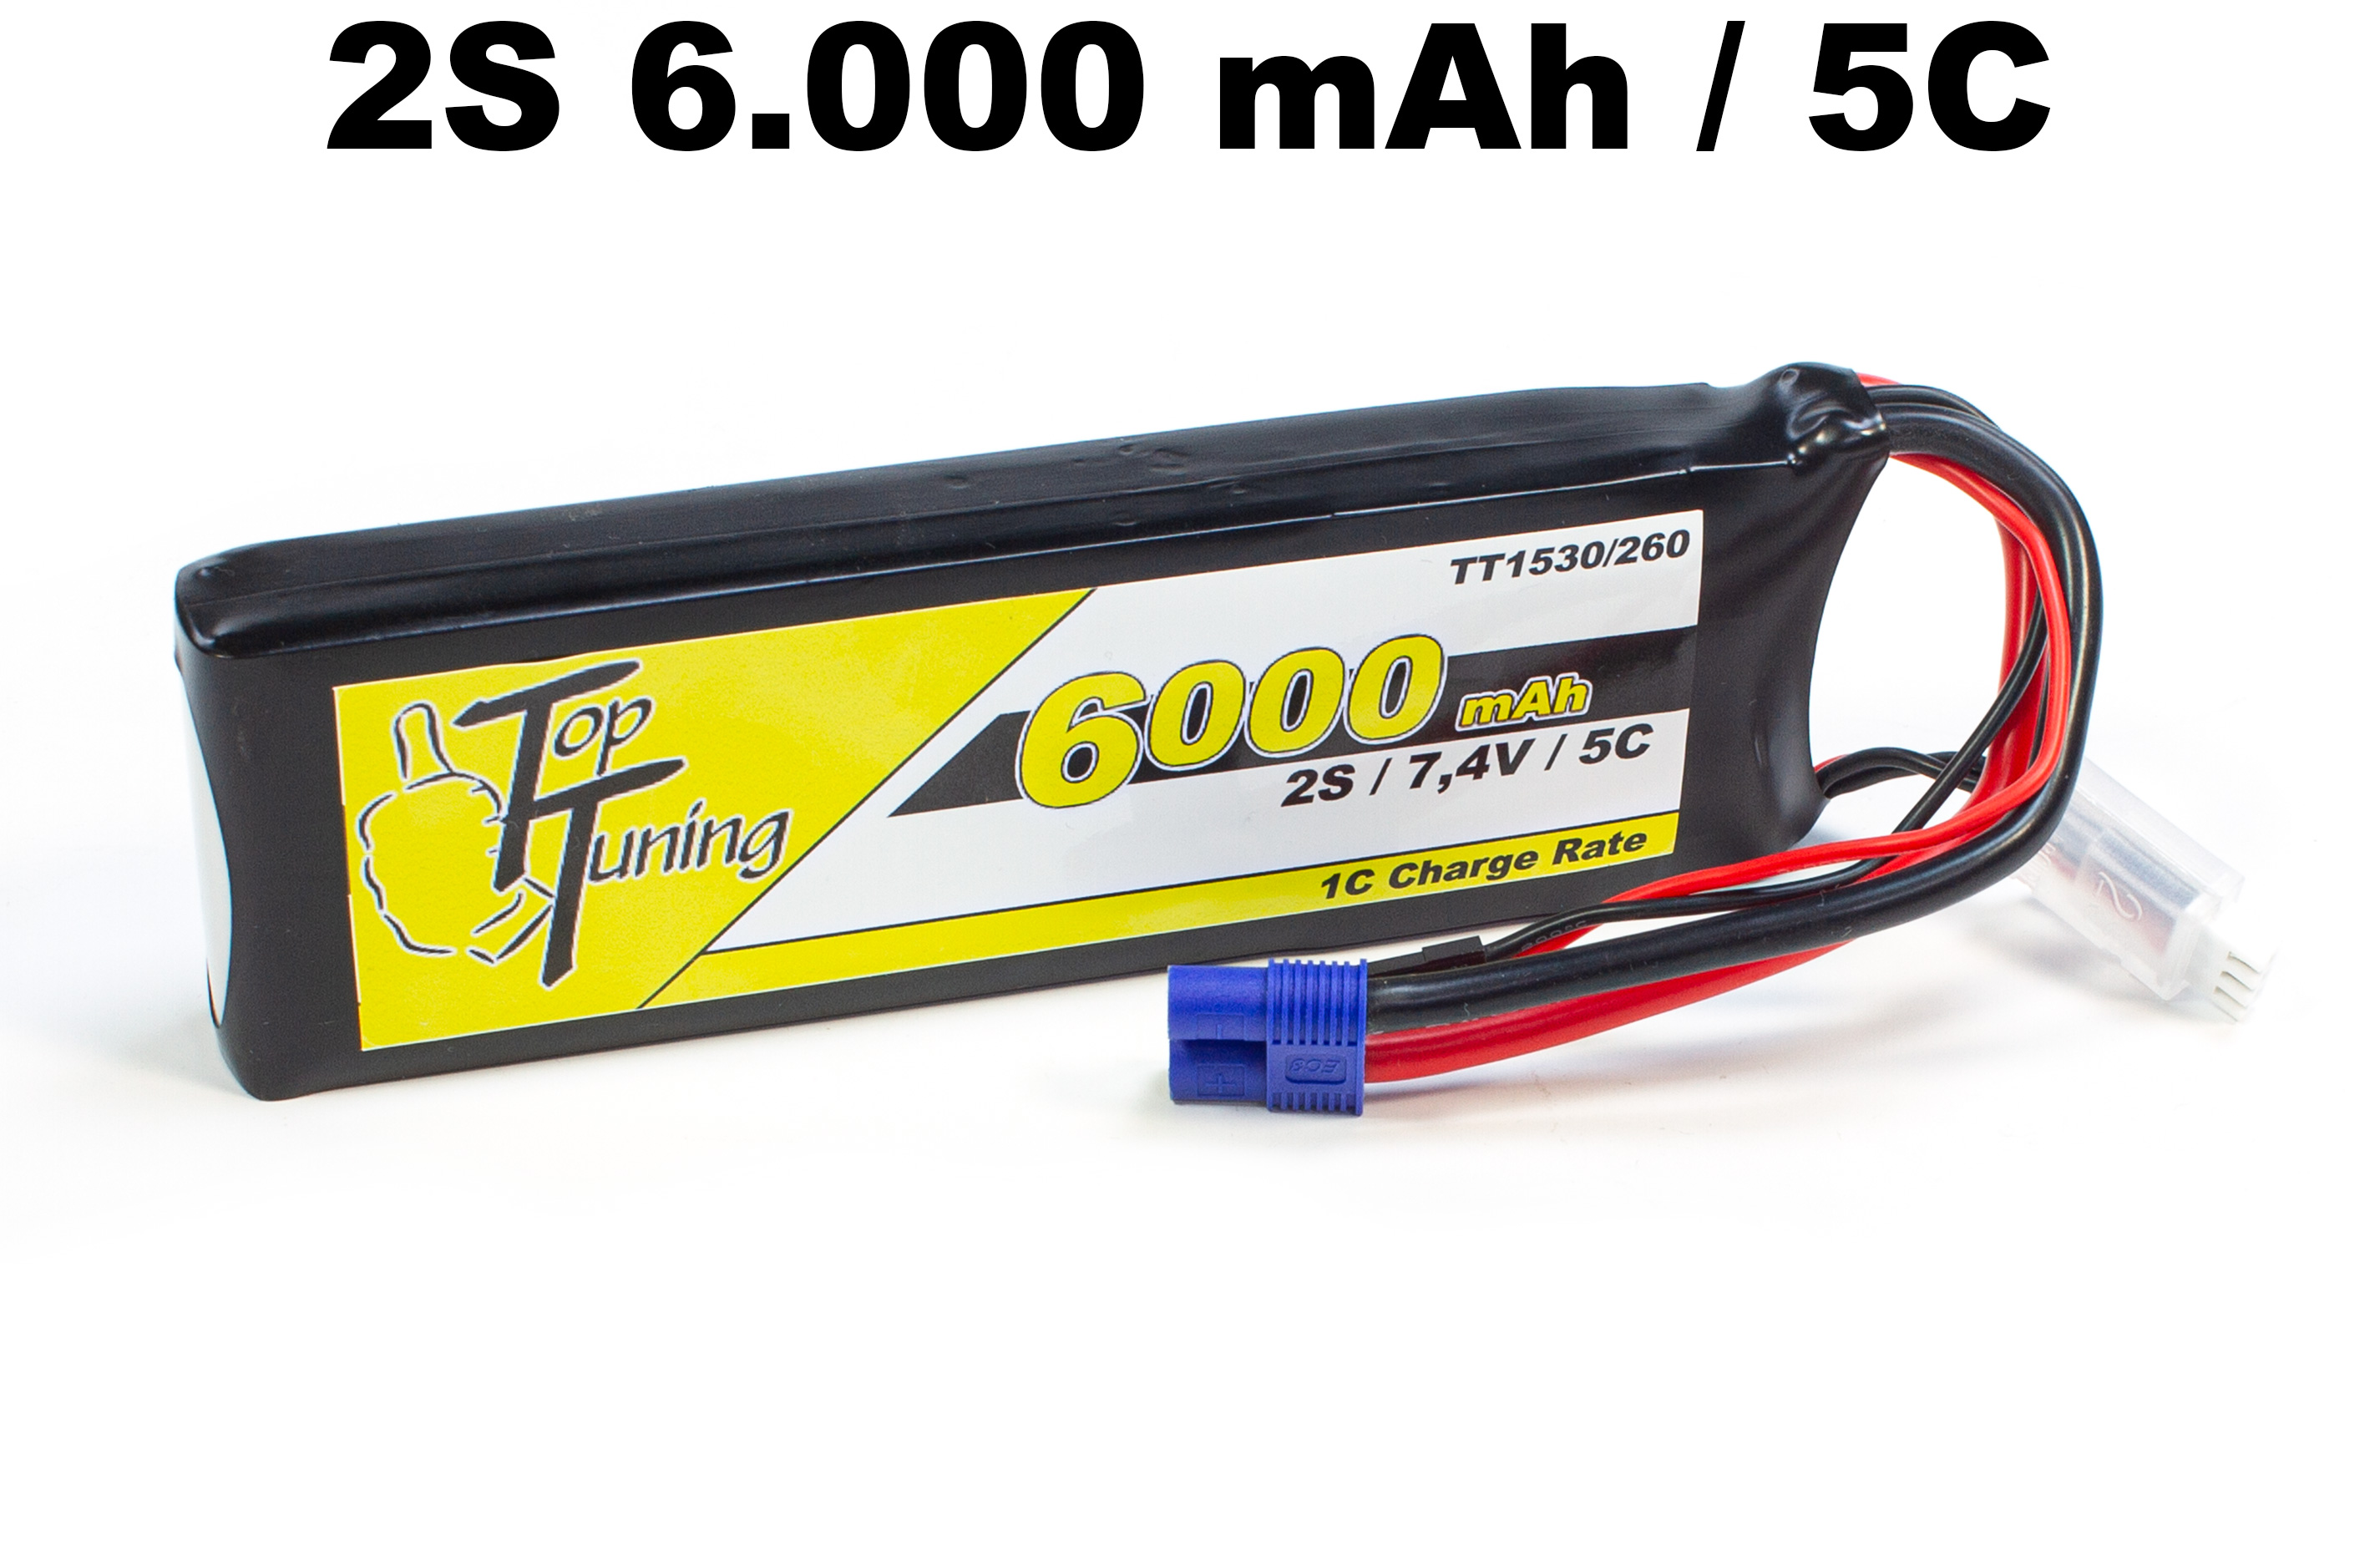 TT1530/260 Top Tuning 6000 mAh LiPo Empfängerakku 2S, 7,4V 5C Angebot